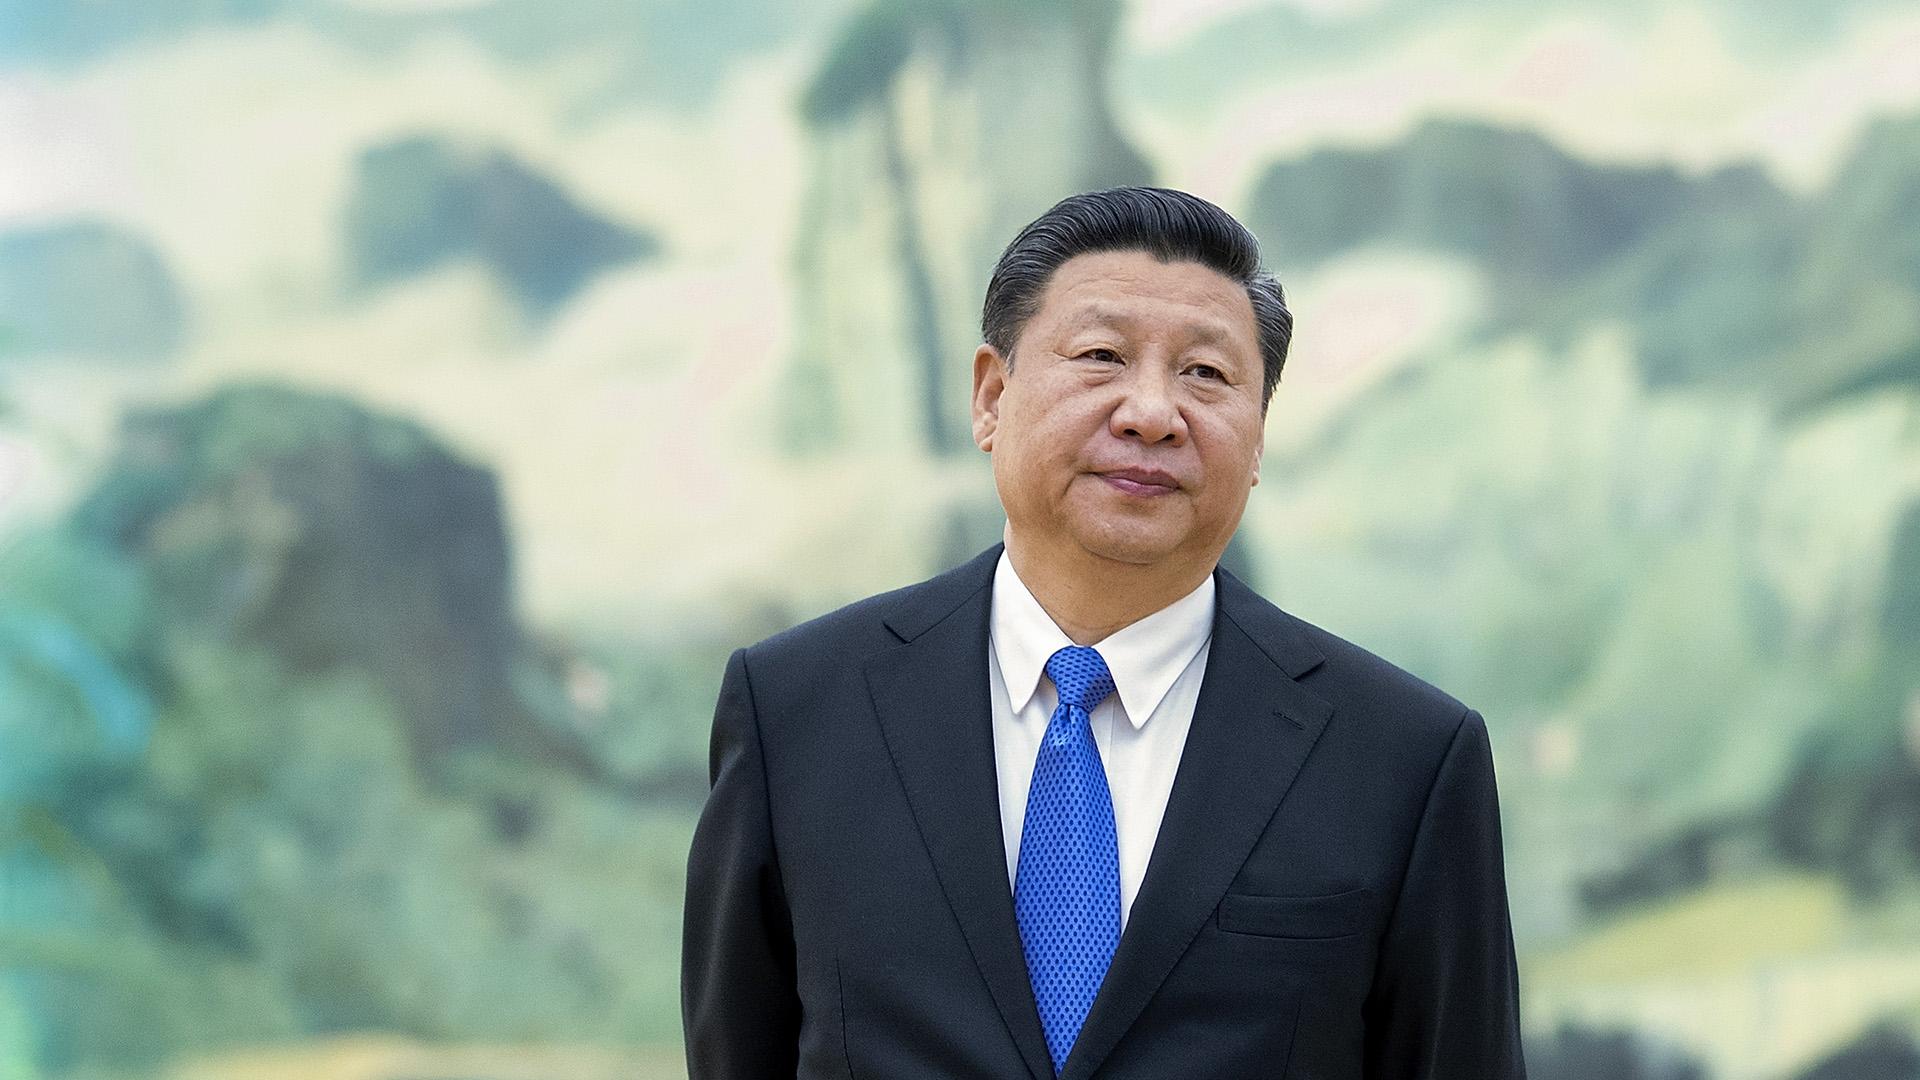 Xi Jinping's Second Belt and Road Forum: Three Key Takeaways